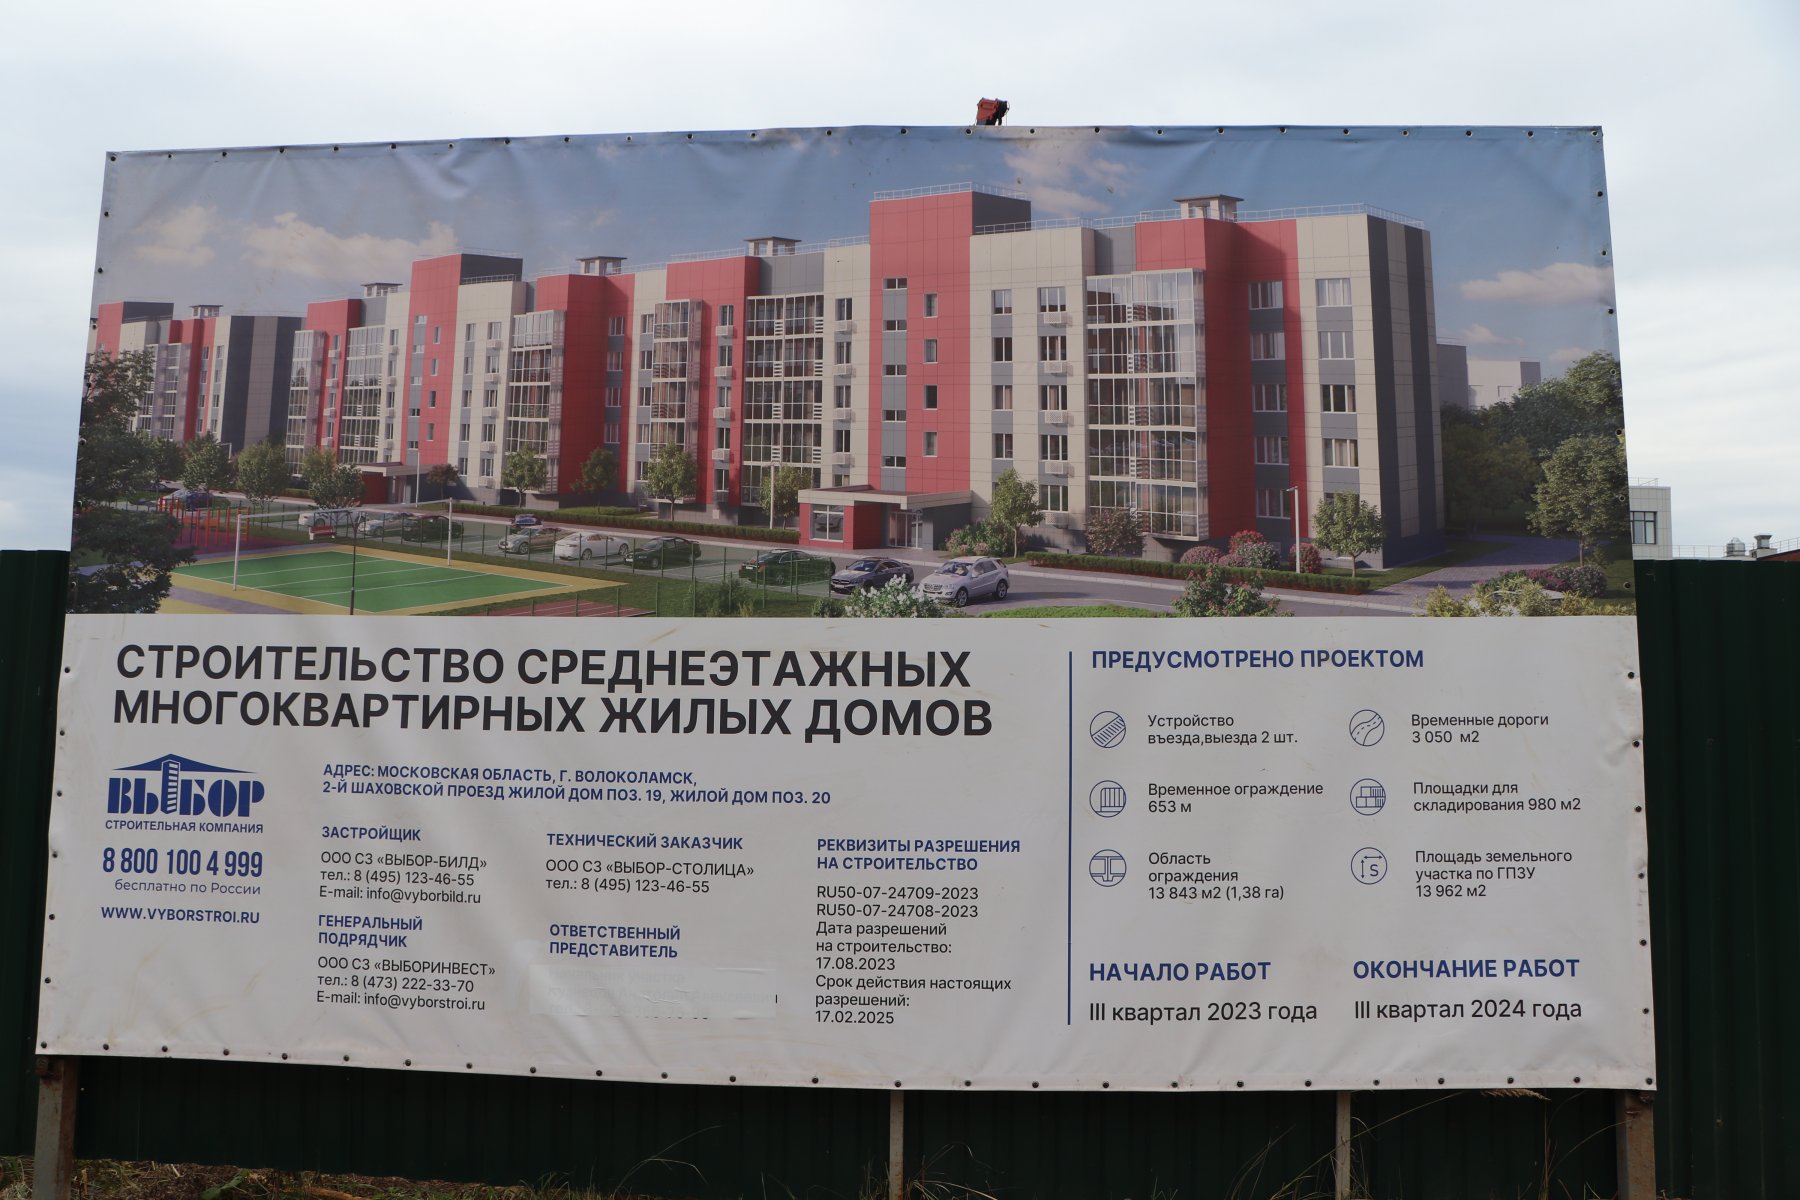 Строительство многоквартирных домов началось в Волоколамске 